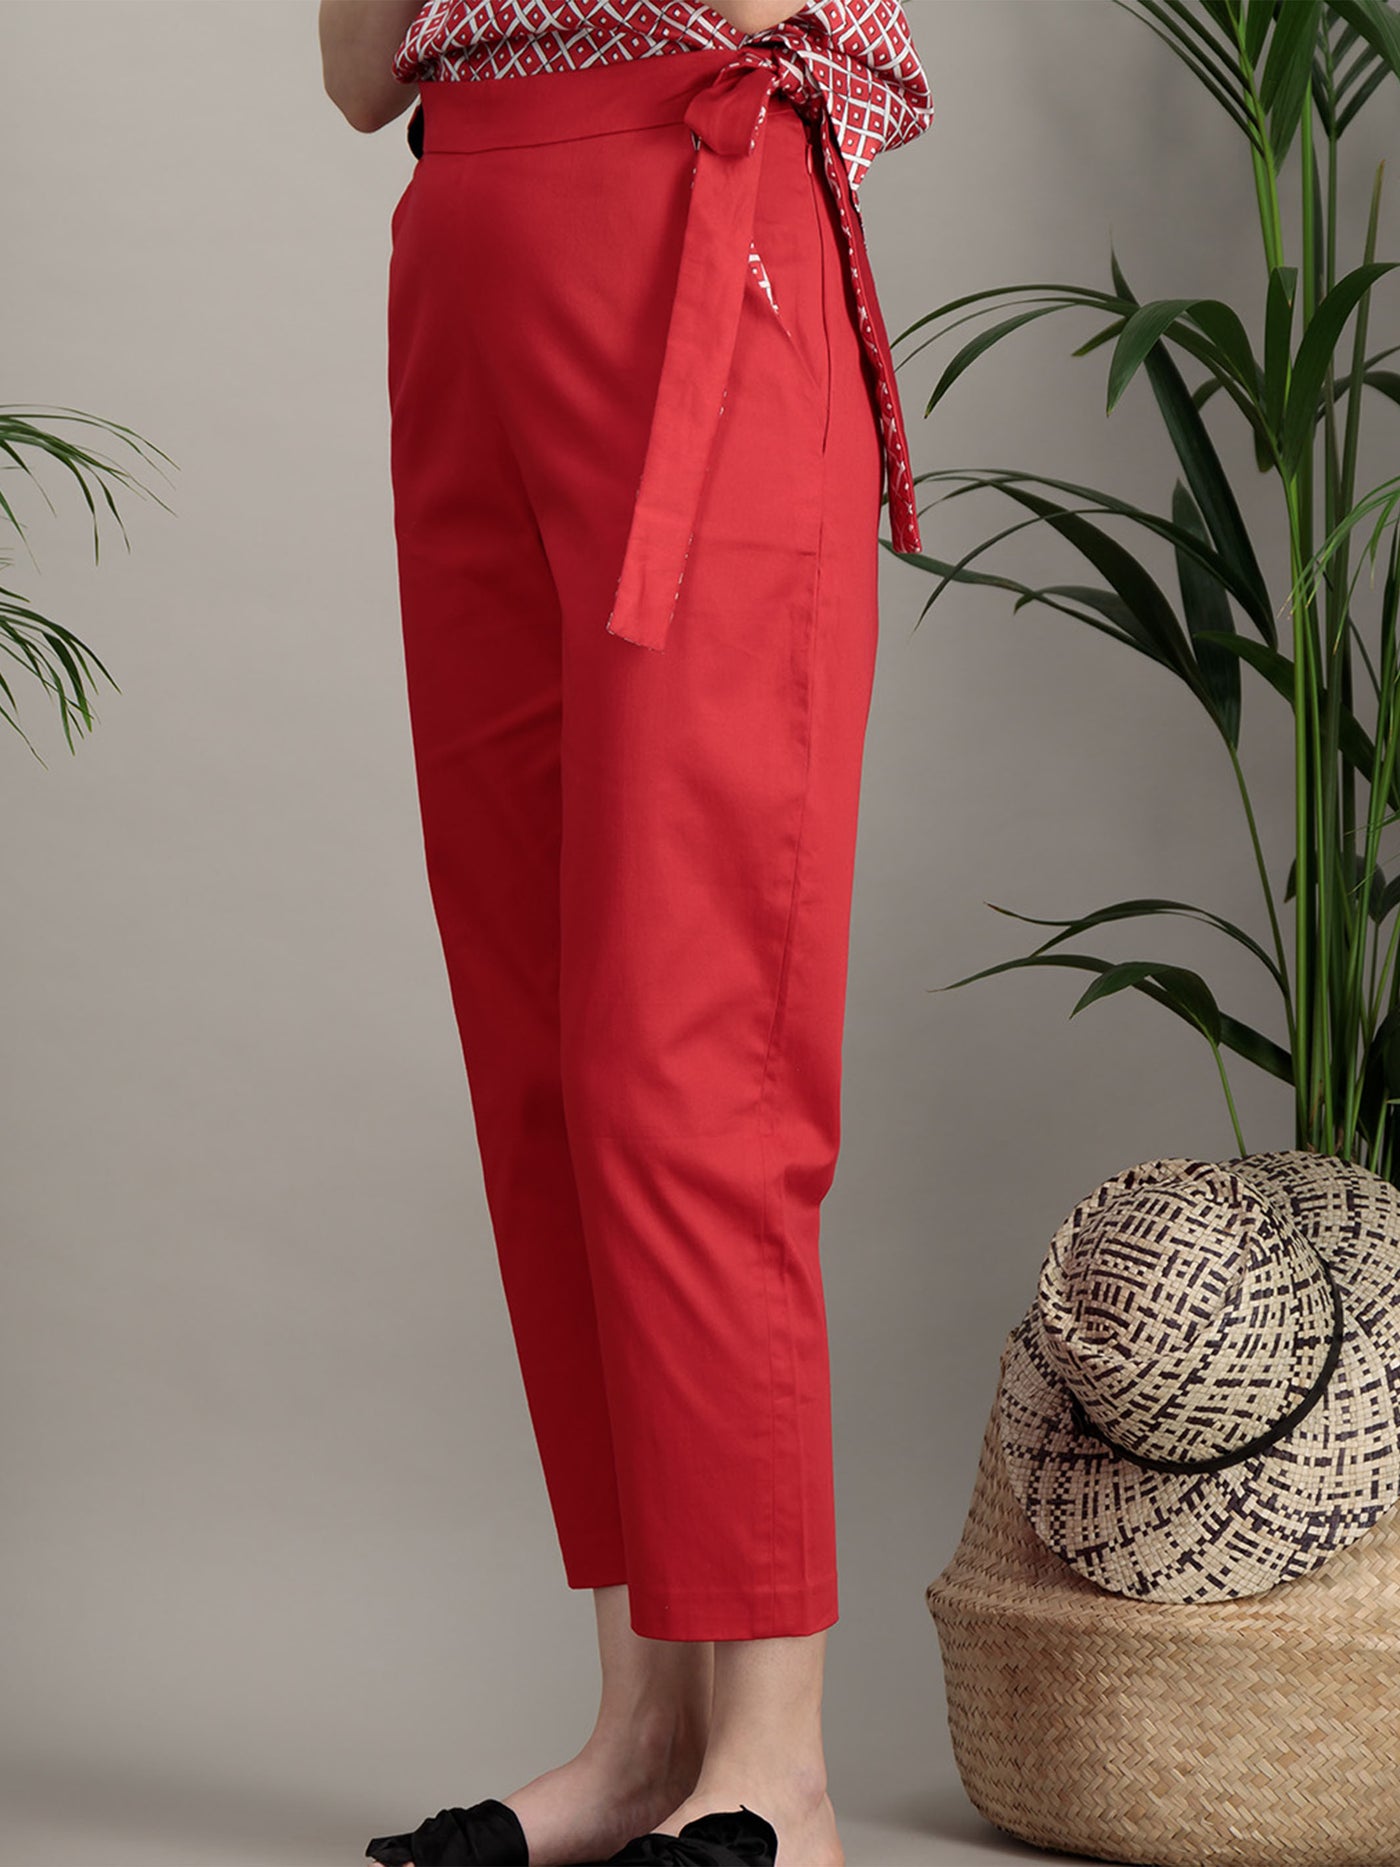 pantalon en coton rouge court